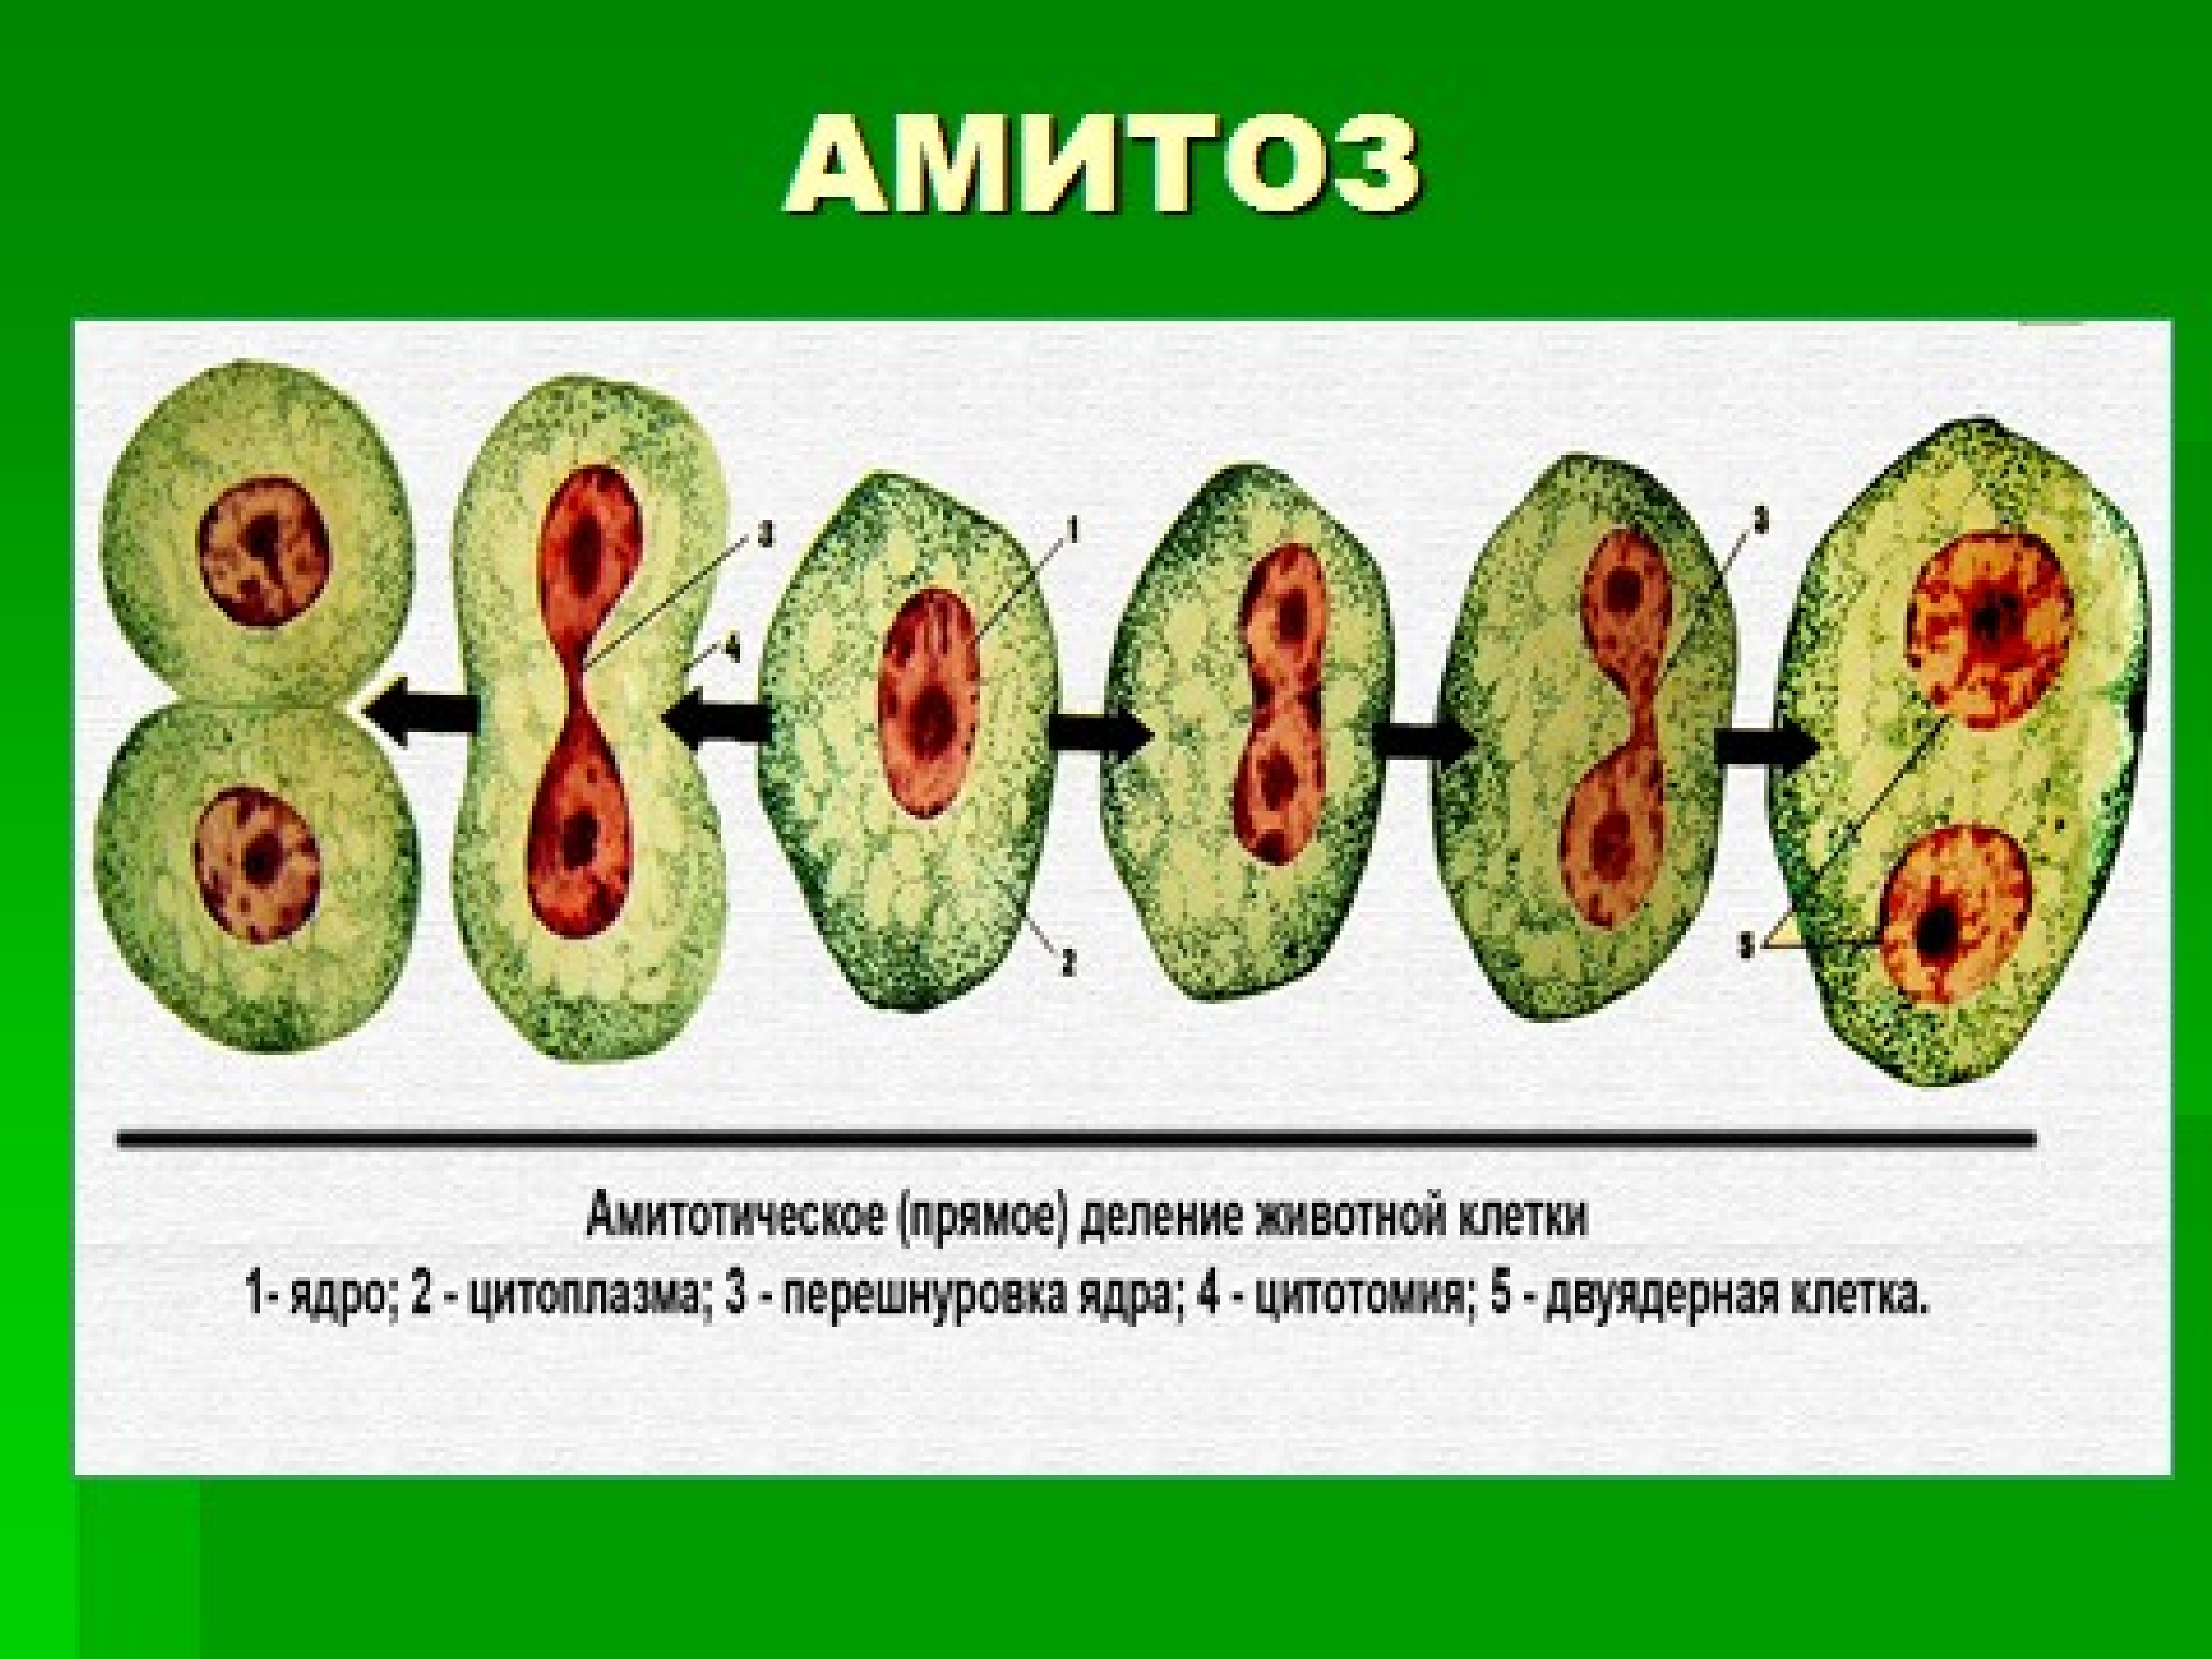 1 способы деления клеток. Деление клетки амитоз схема. Деление растительной клетки митоз. Схема амитоза и эндомитоза. Деление клеточных ядер митоз мейоз.